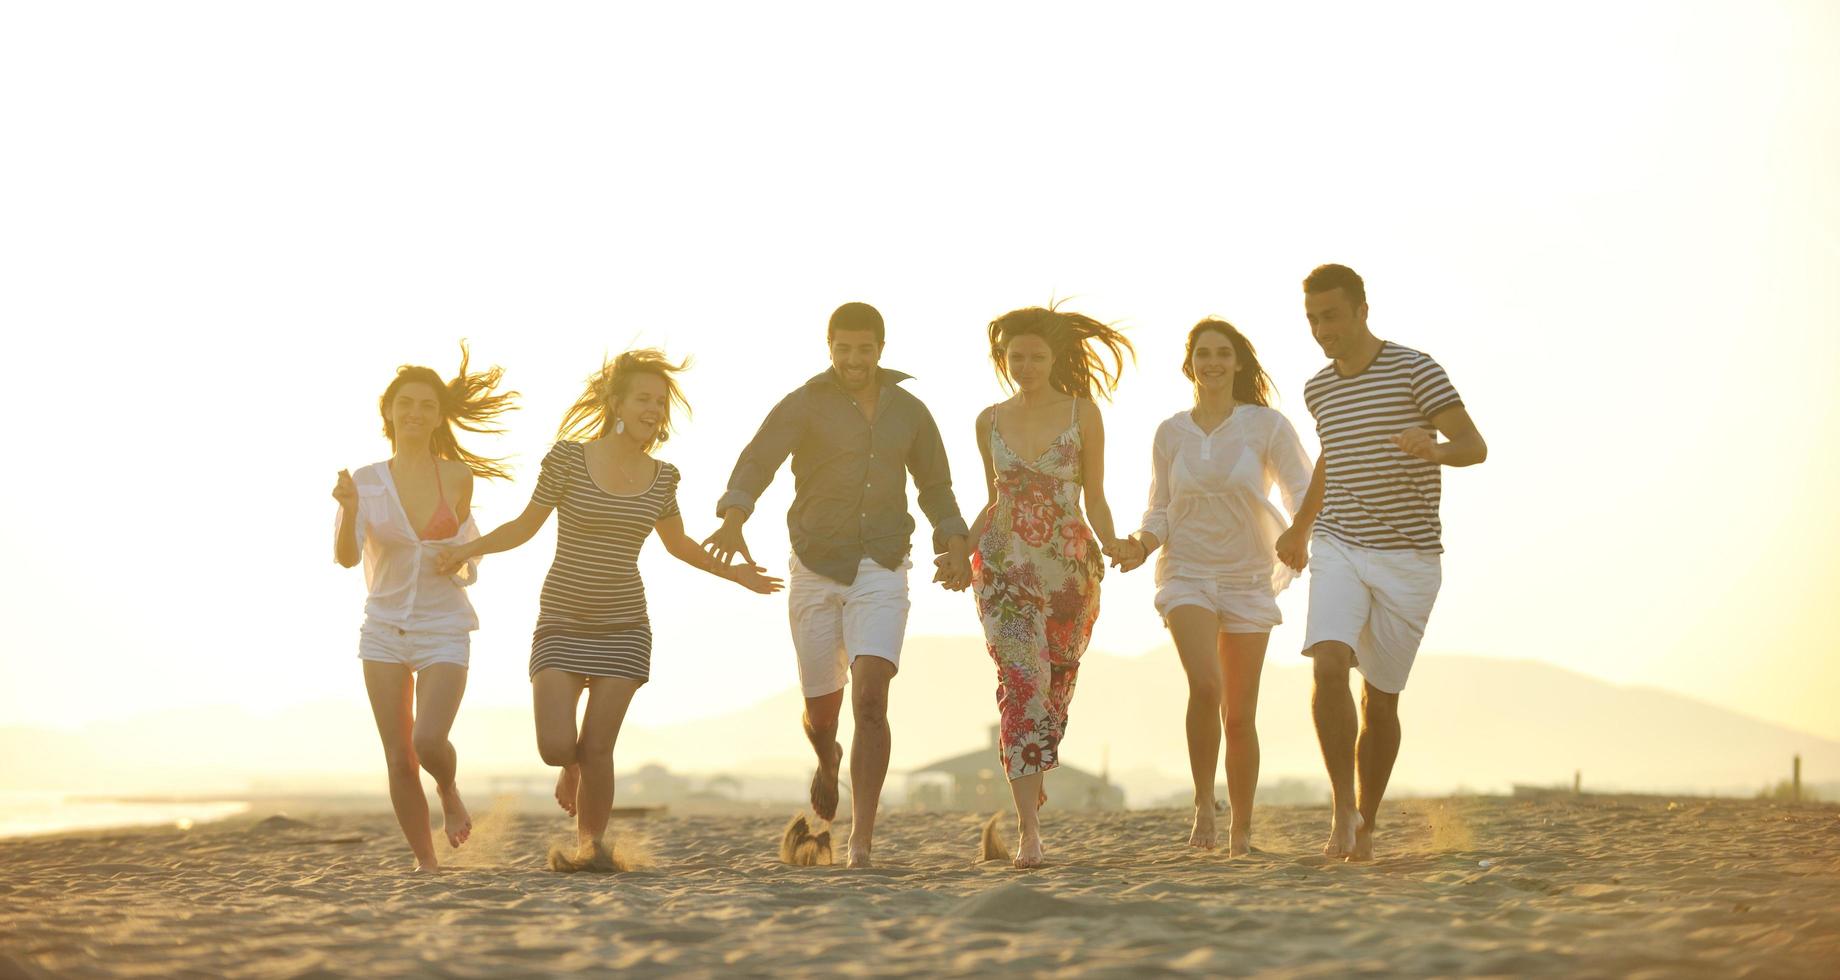 gelukkig jong mensen groep hebben pret Aan strand foto